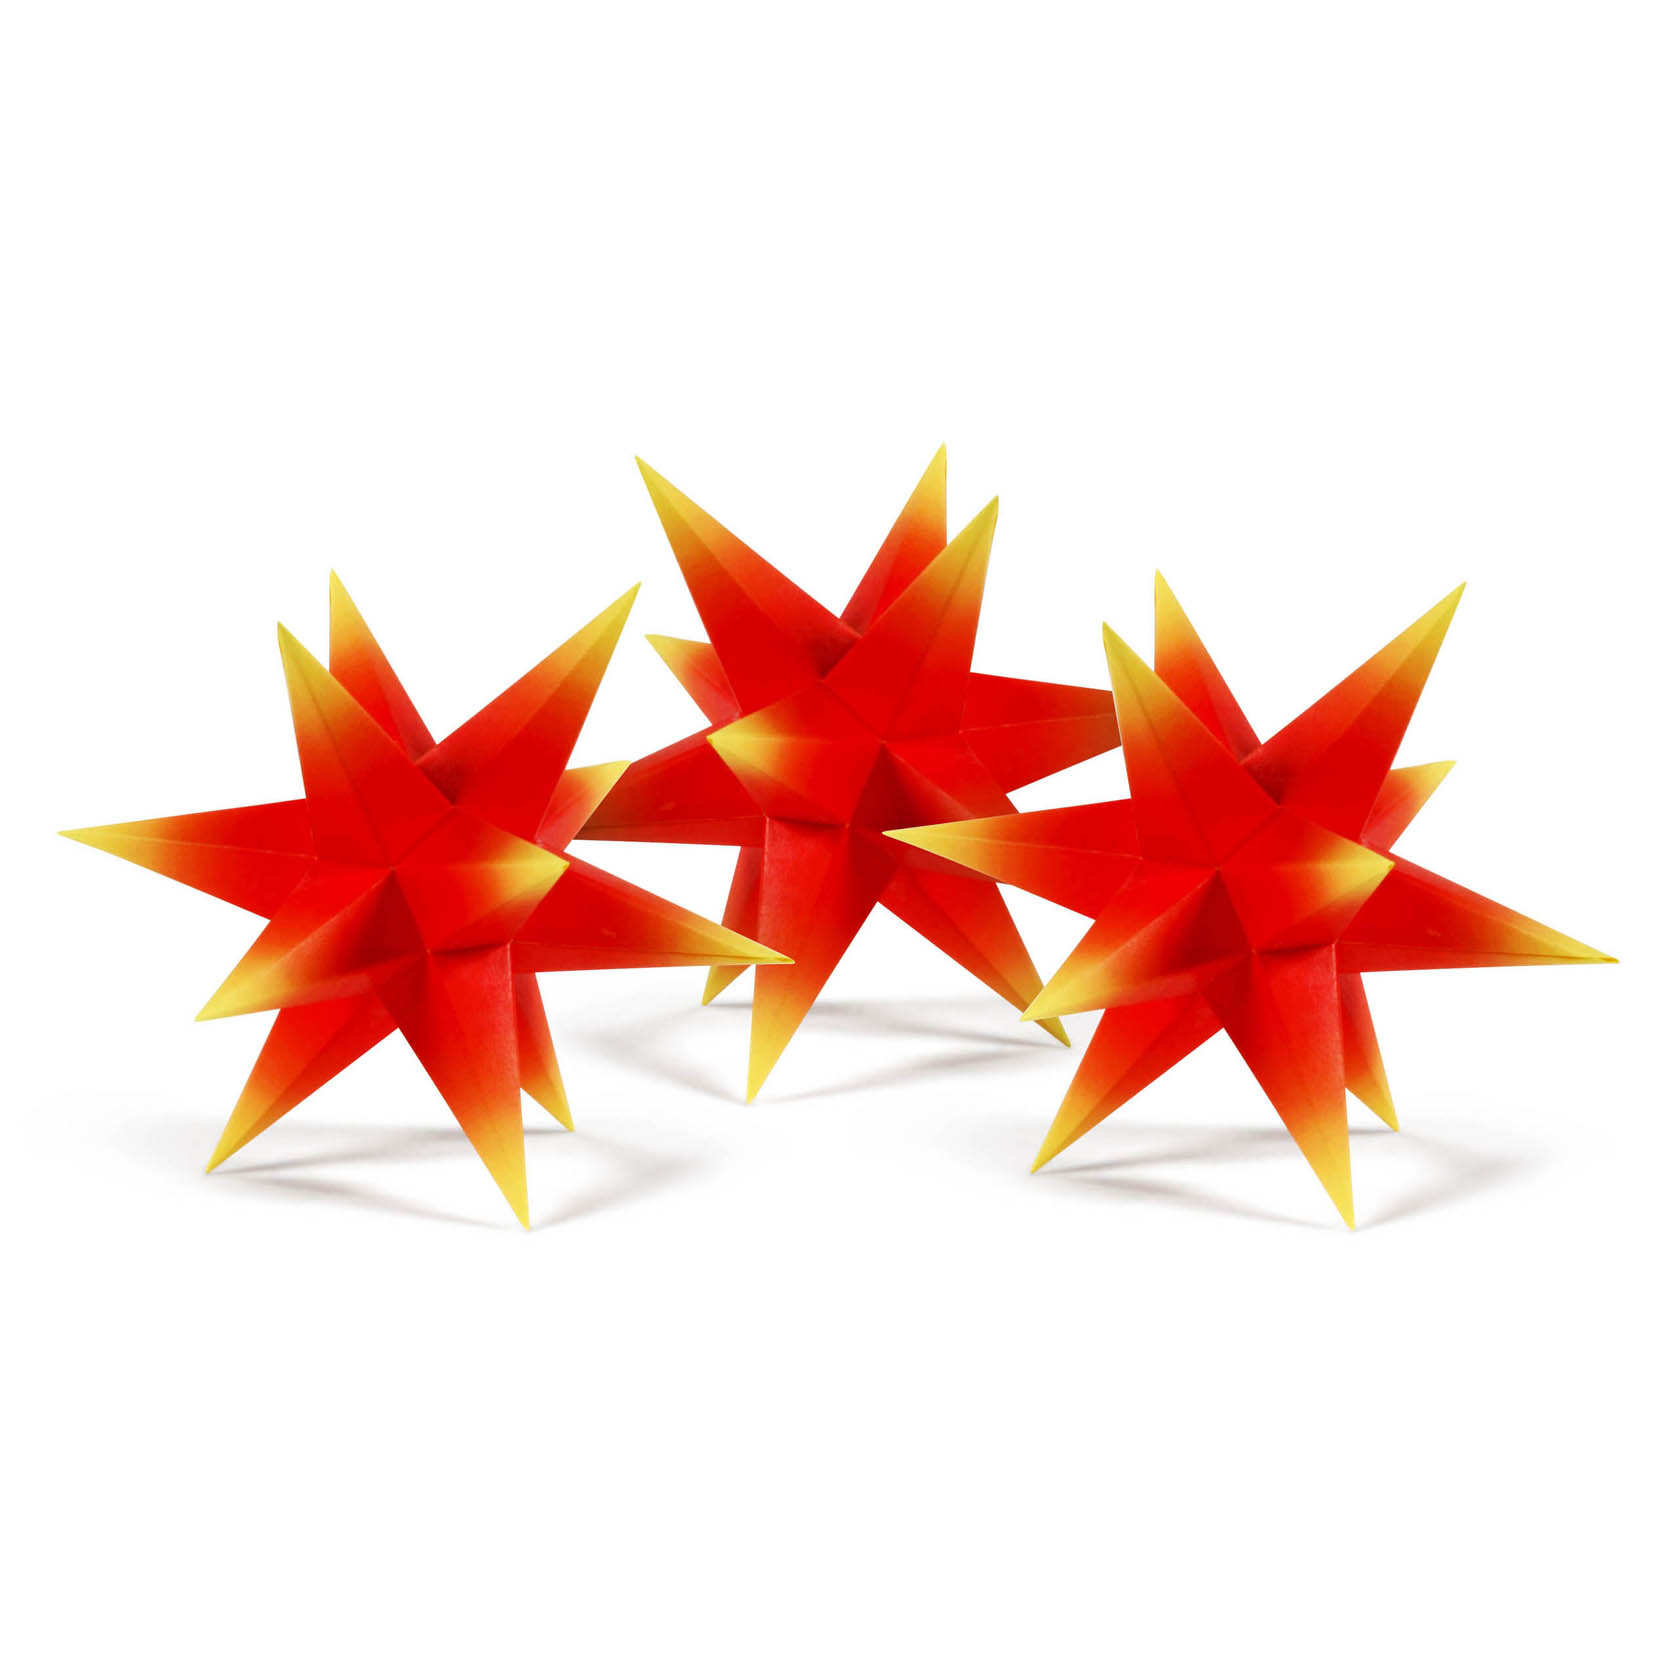 Bastelsatz Adventsstern (3 Stück) Roter Kern mit gelben Spitzen im Dregeno Online Shop günstig kaufen